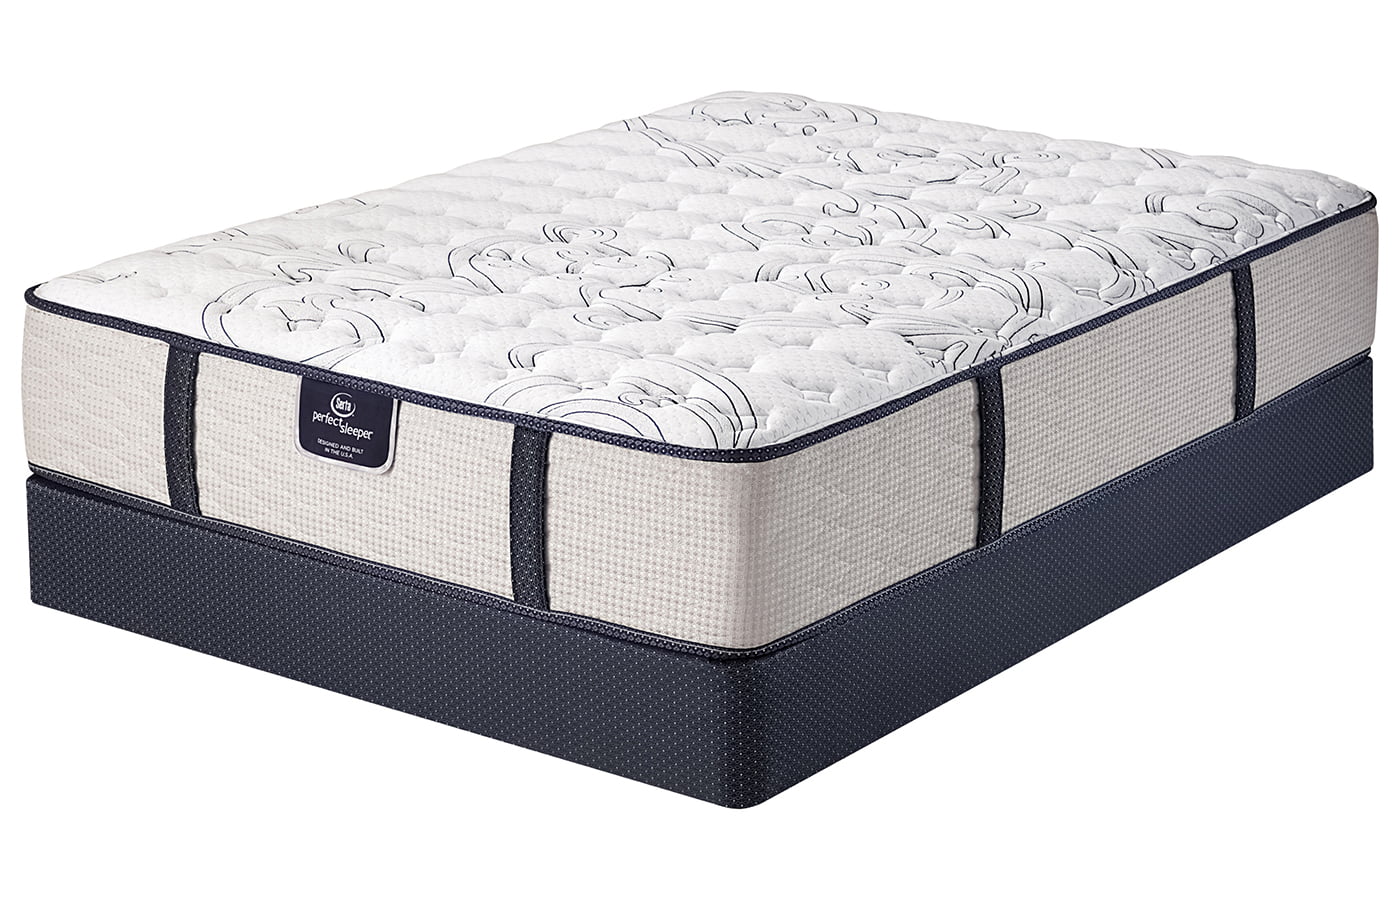 serta perfect sleeper mattress cost